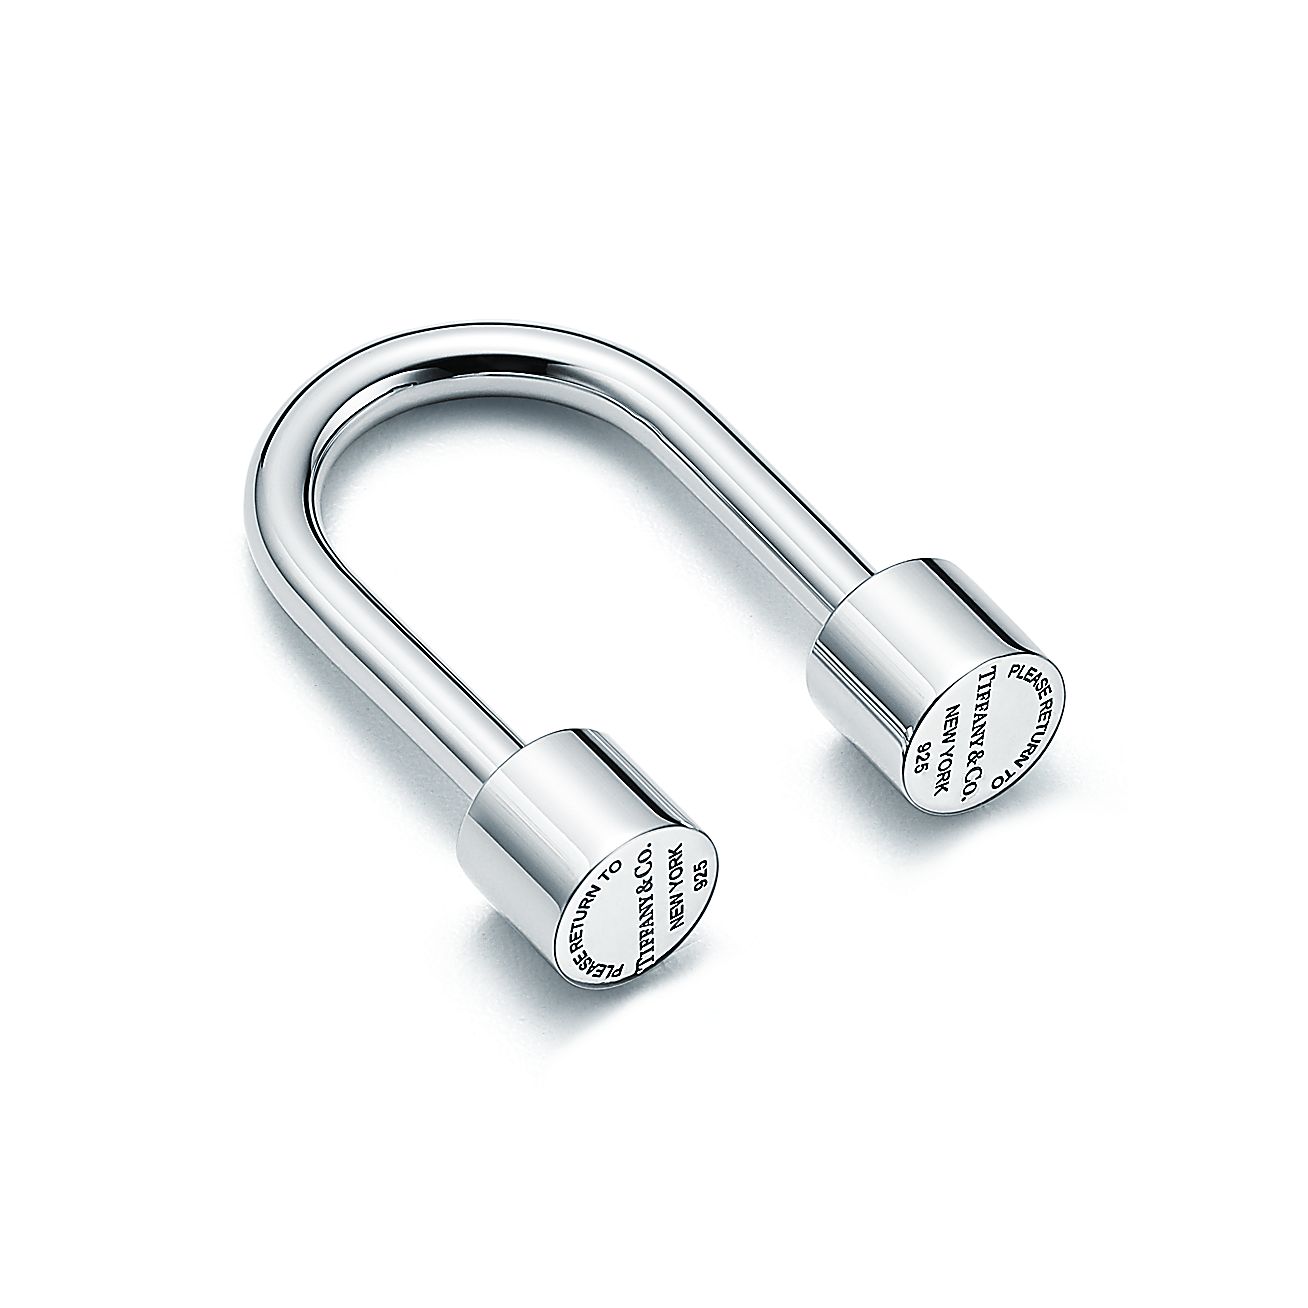 Return to Tiffany® U-shaped key ring in sterling silver. | Tiffany & Co.